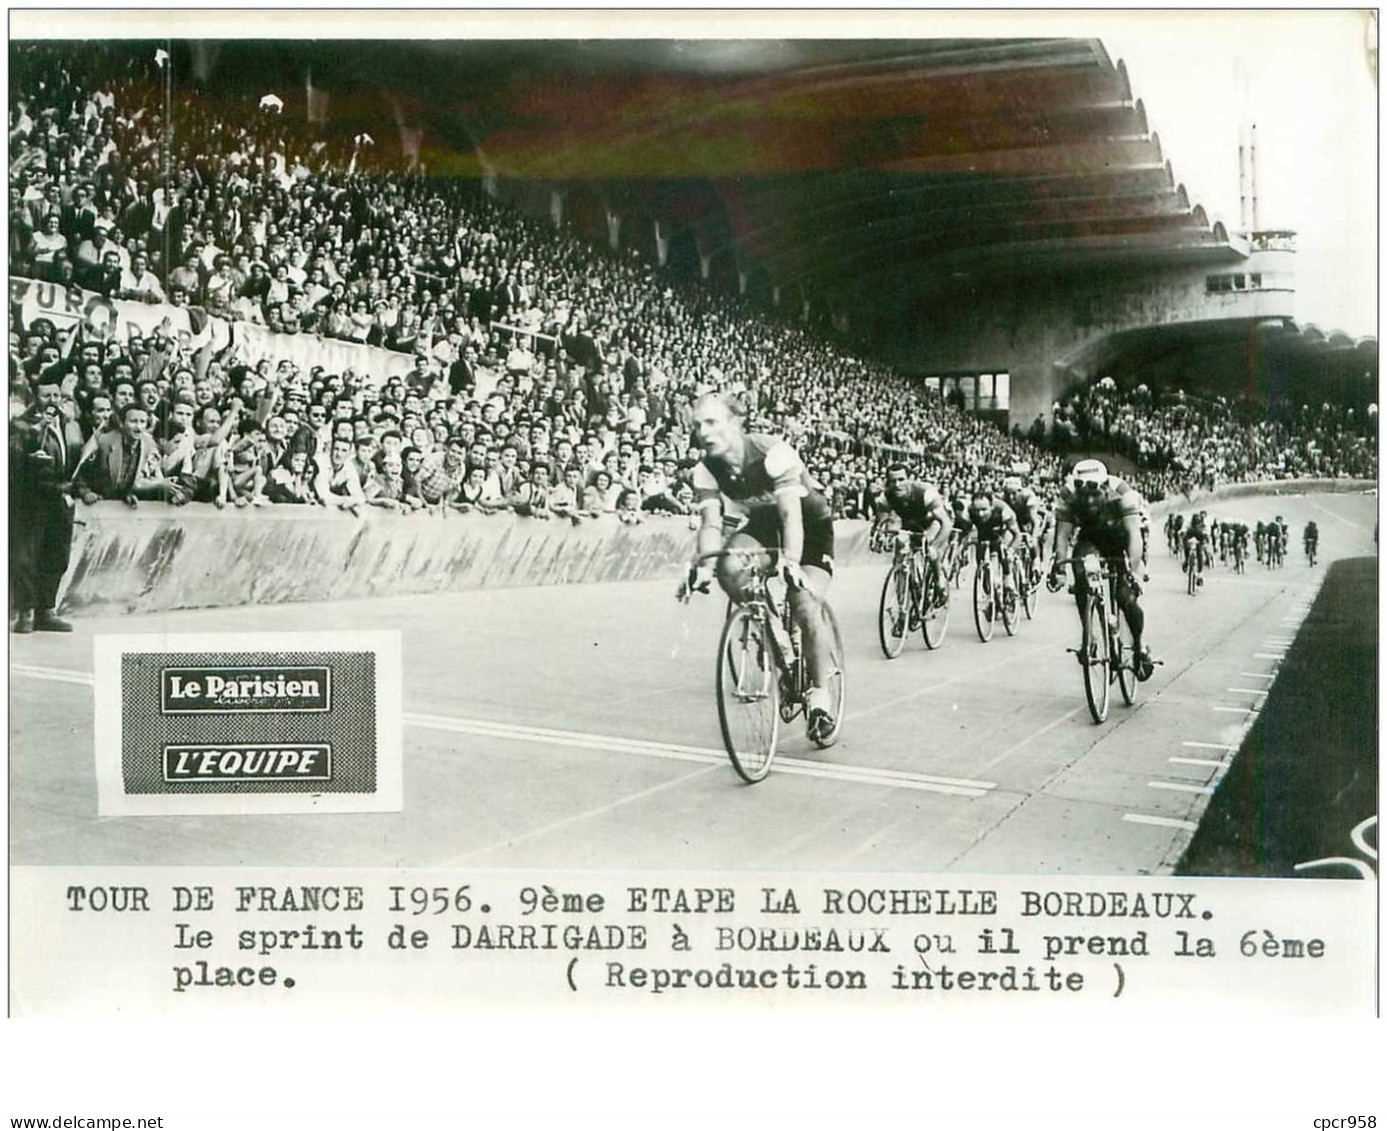 PHOTO DE PRESSE ORIGINALE TOUR DE FRANCE 1956.20X15.9eme ETAPE LA ROCHELLE BORDEAUX.LE SRINT DE DARRIGADE.n°18669 - Cycling